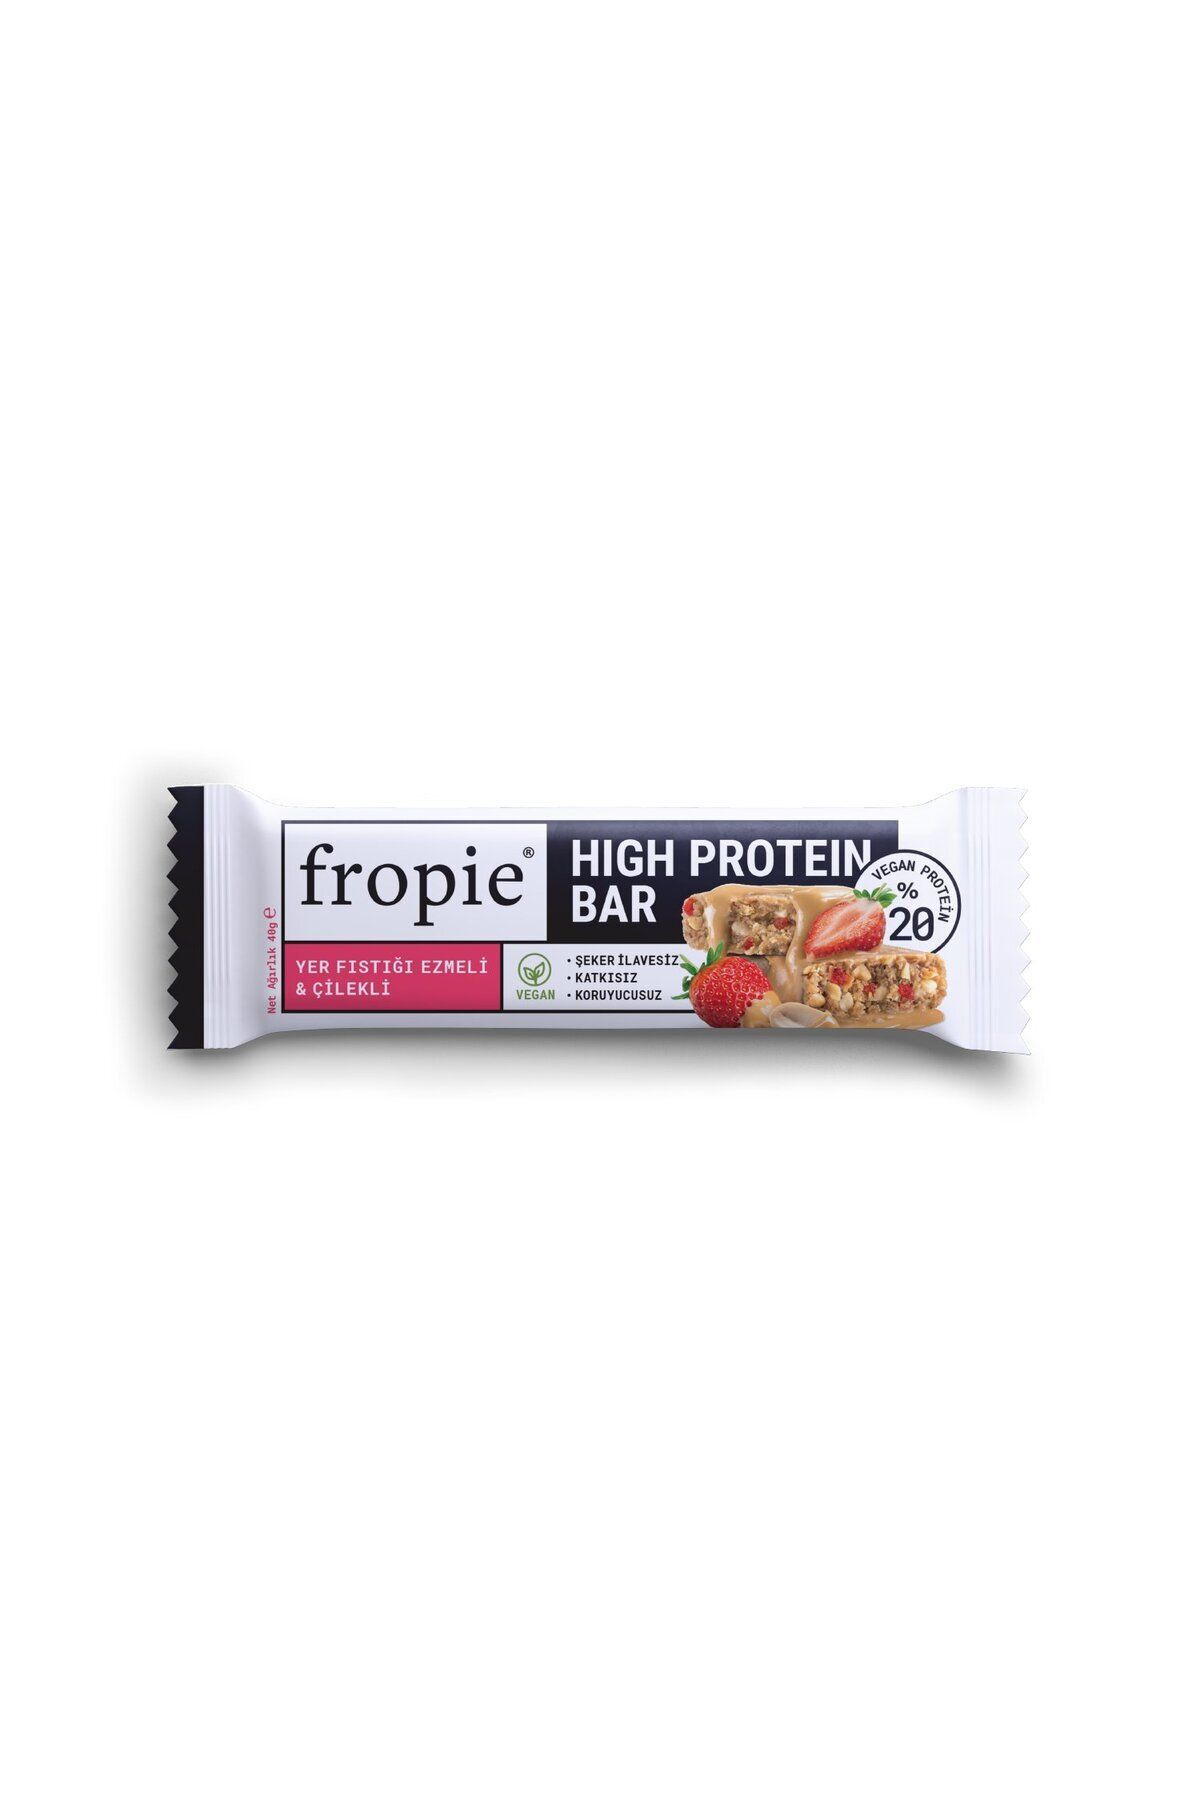 FROPİE Fropie High Protein Bar Yer Fıstığı Emzeli Çilekli Vegan